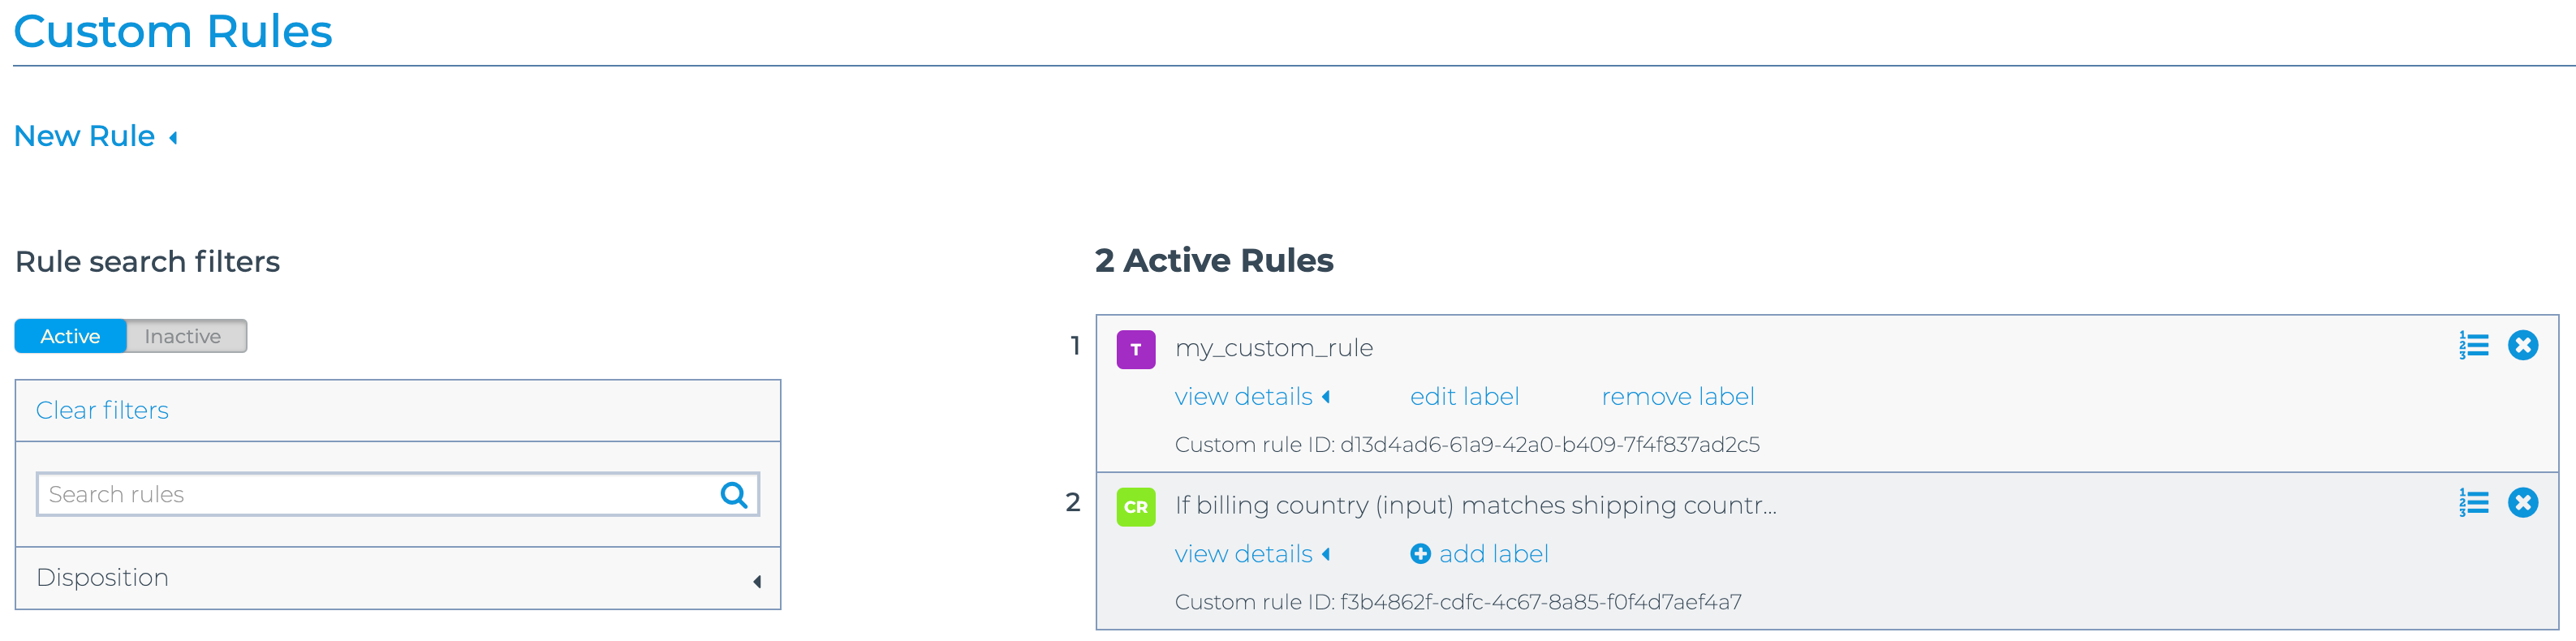 custom_rules.png